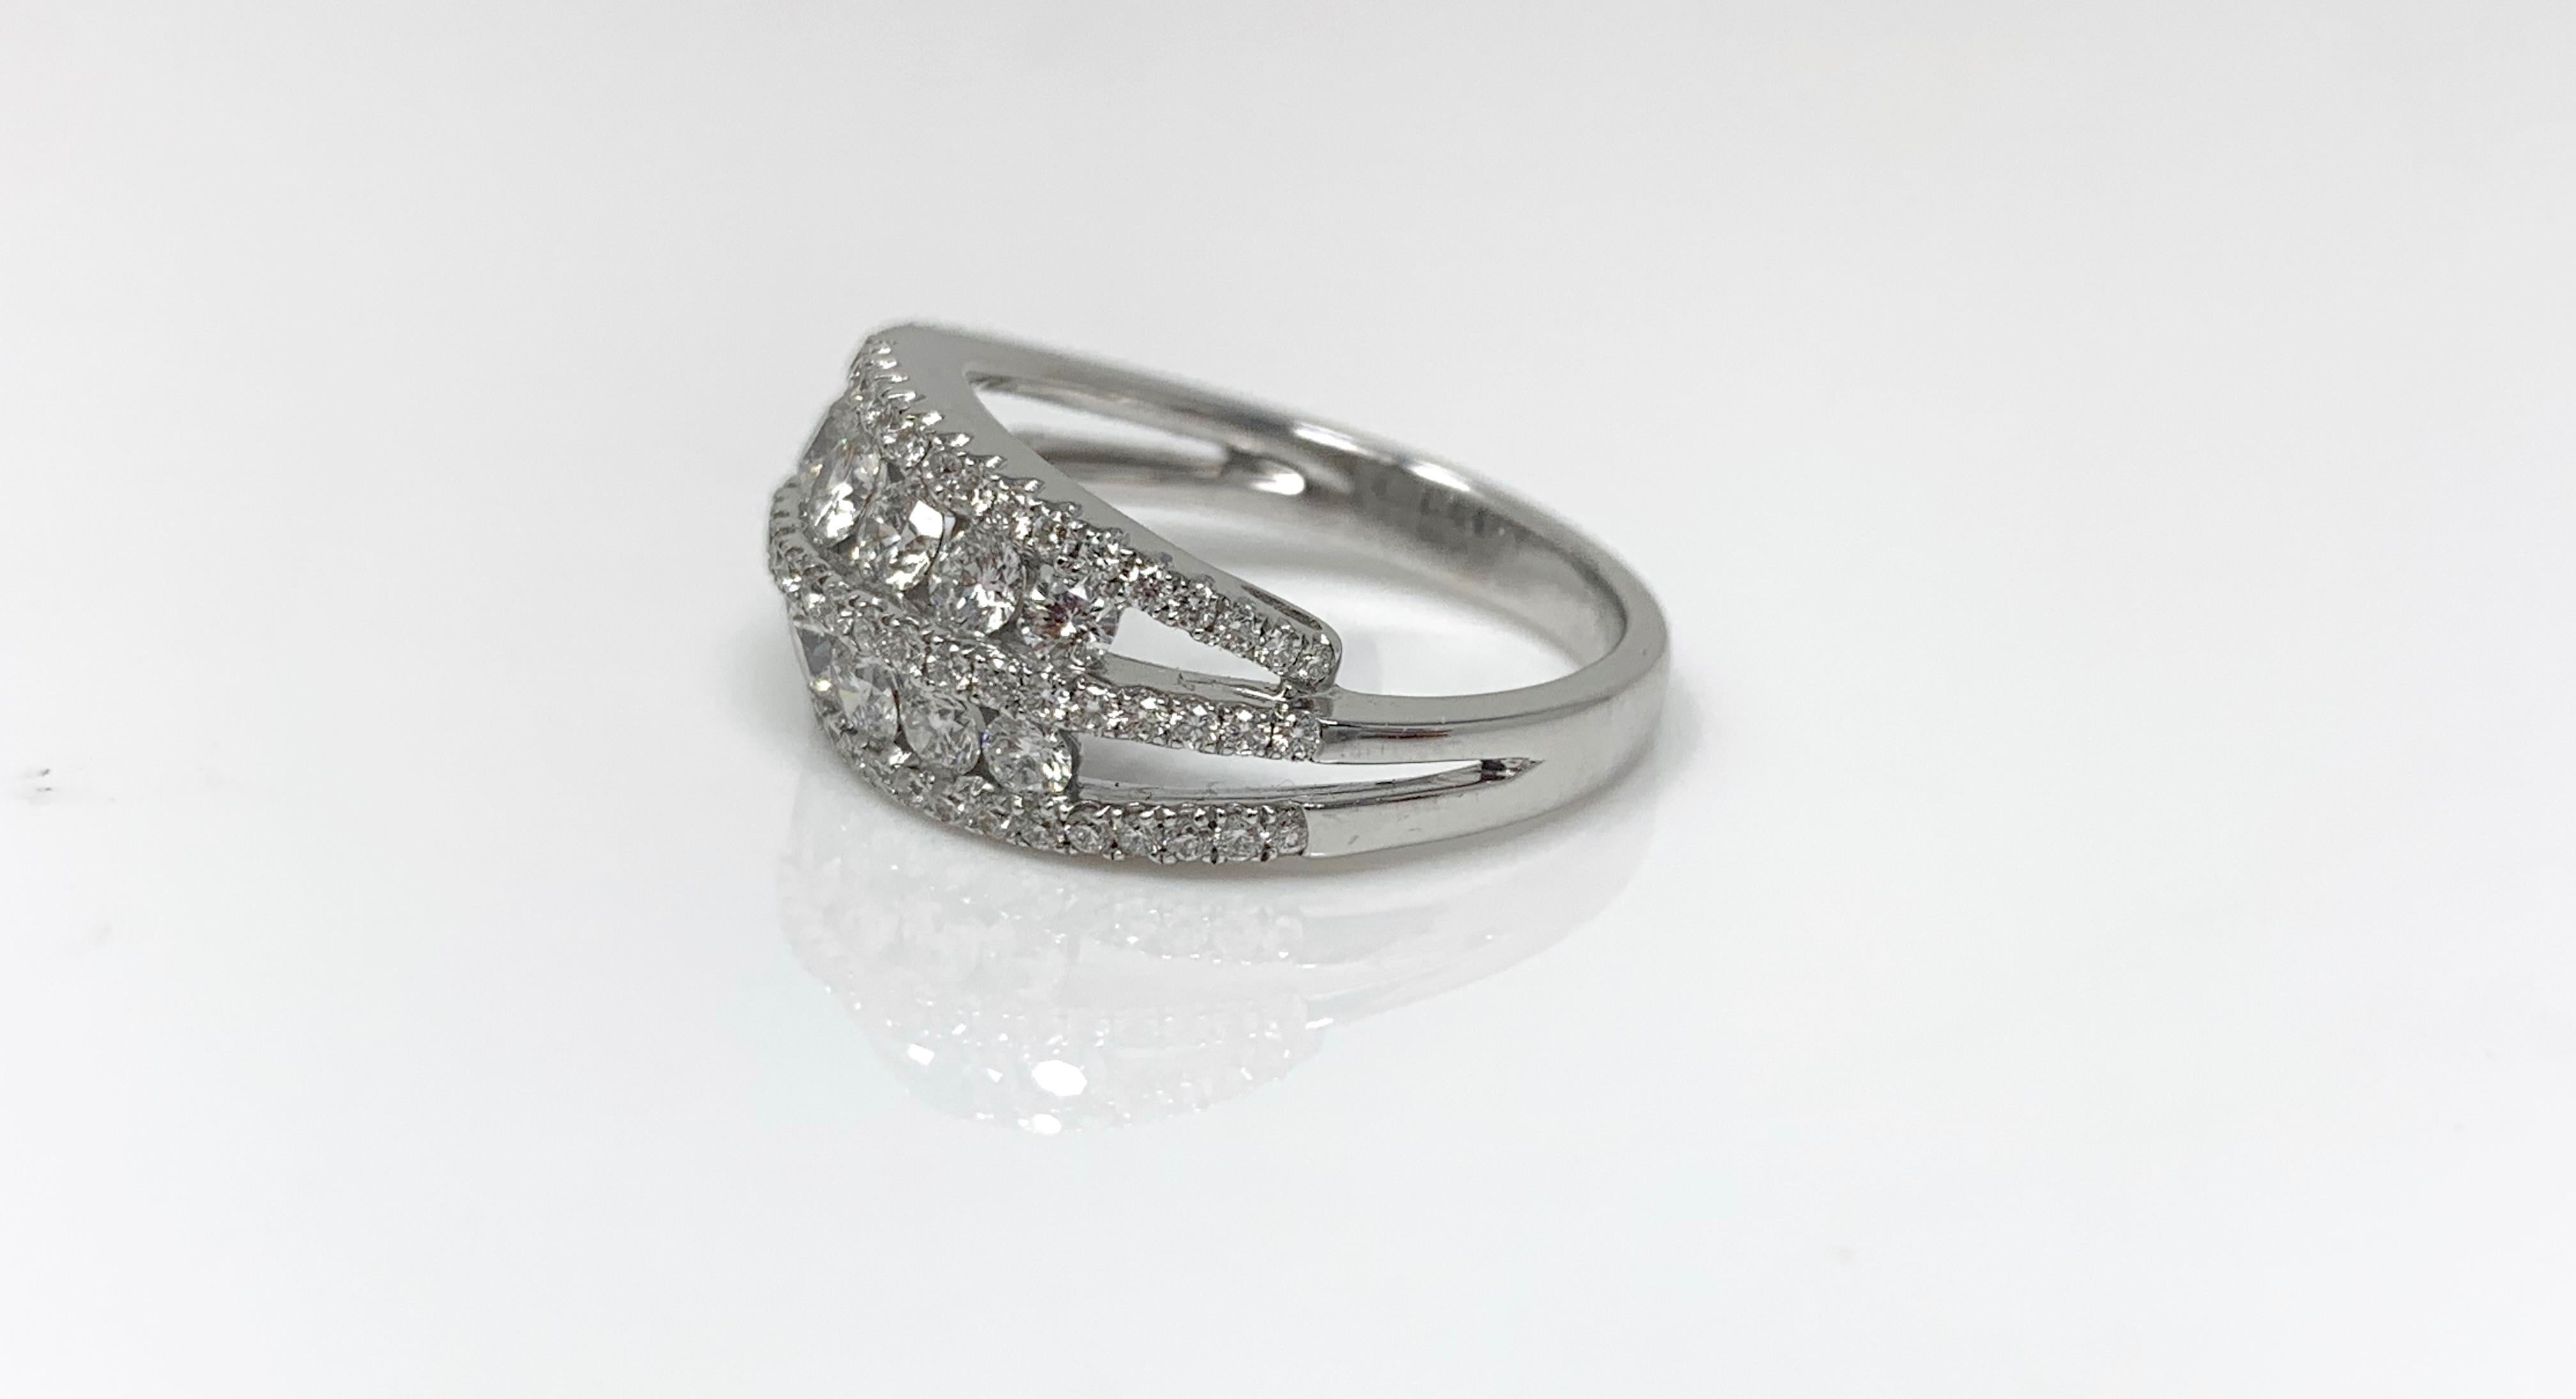 Moguldiam Inc Diamond Wedding Band In 18K White Gold. 
Diamond weight : 1.53 carat 
metal : 18 k white gold 
ring size : 6 1/2 